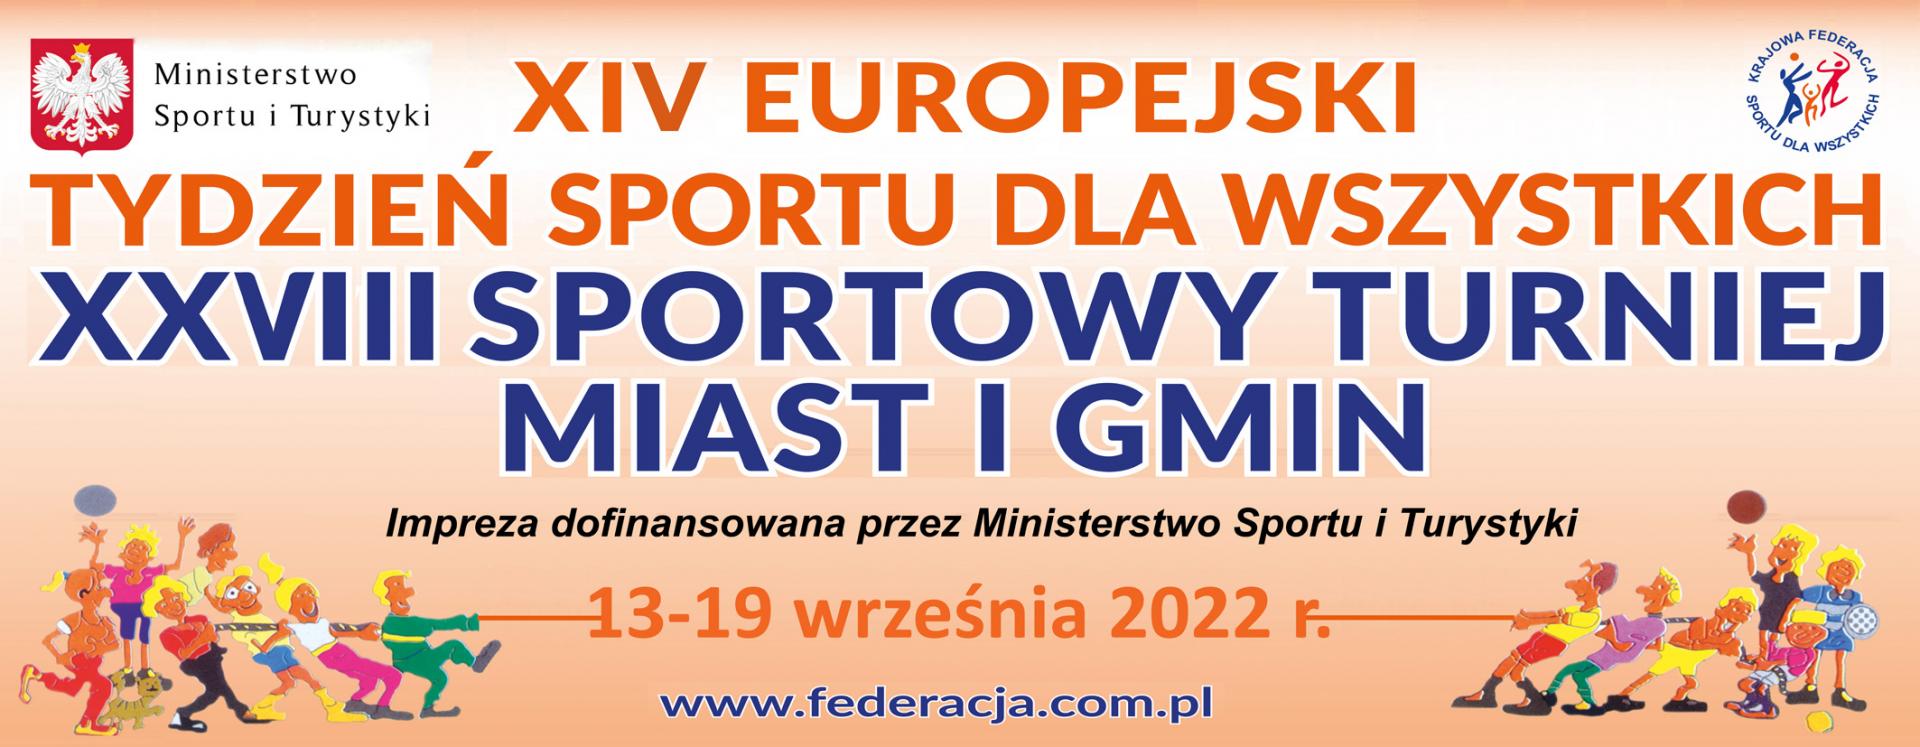 XIV Europejski  Tydzień  Sportu dla Wszystkich – XXVIII Sportowy Turniej Miast i Gmin